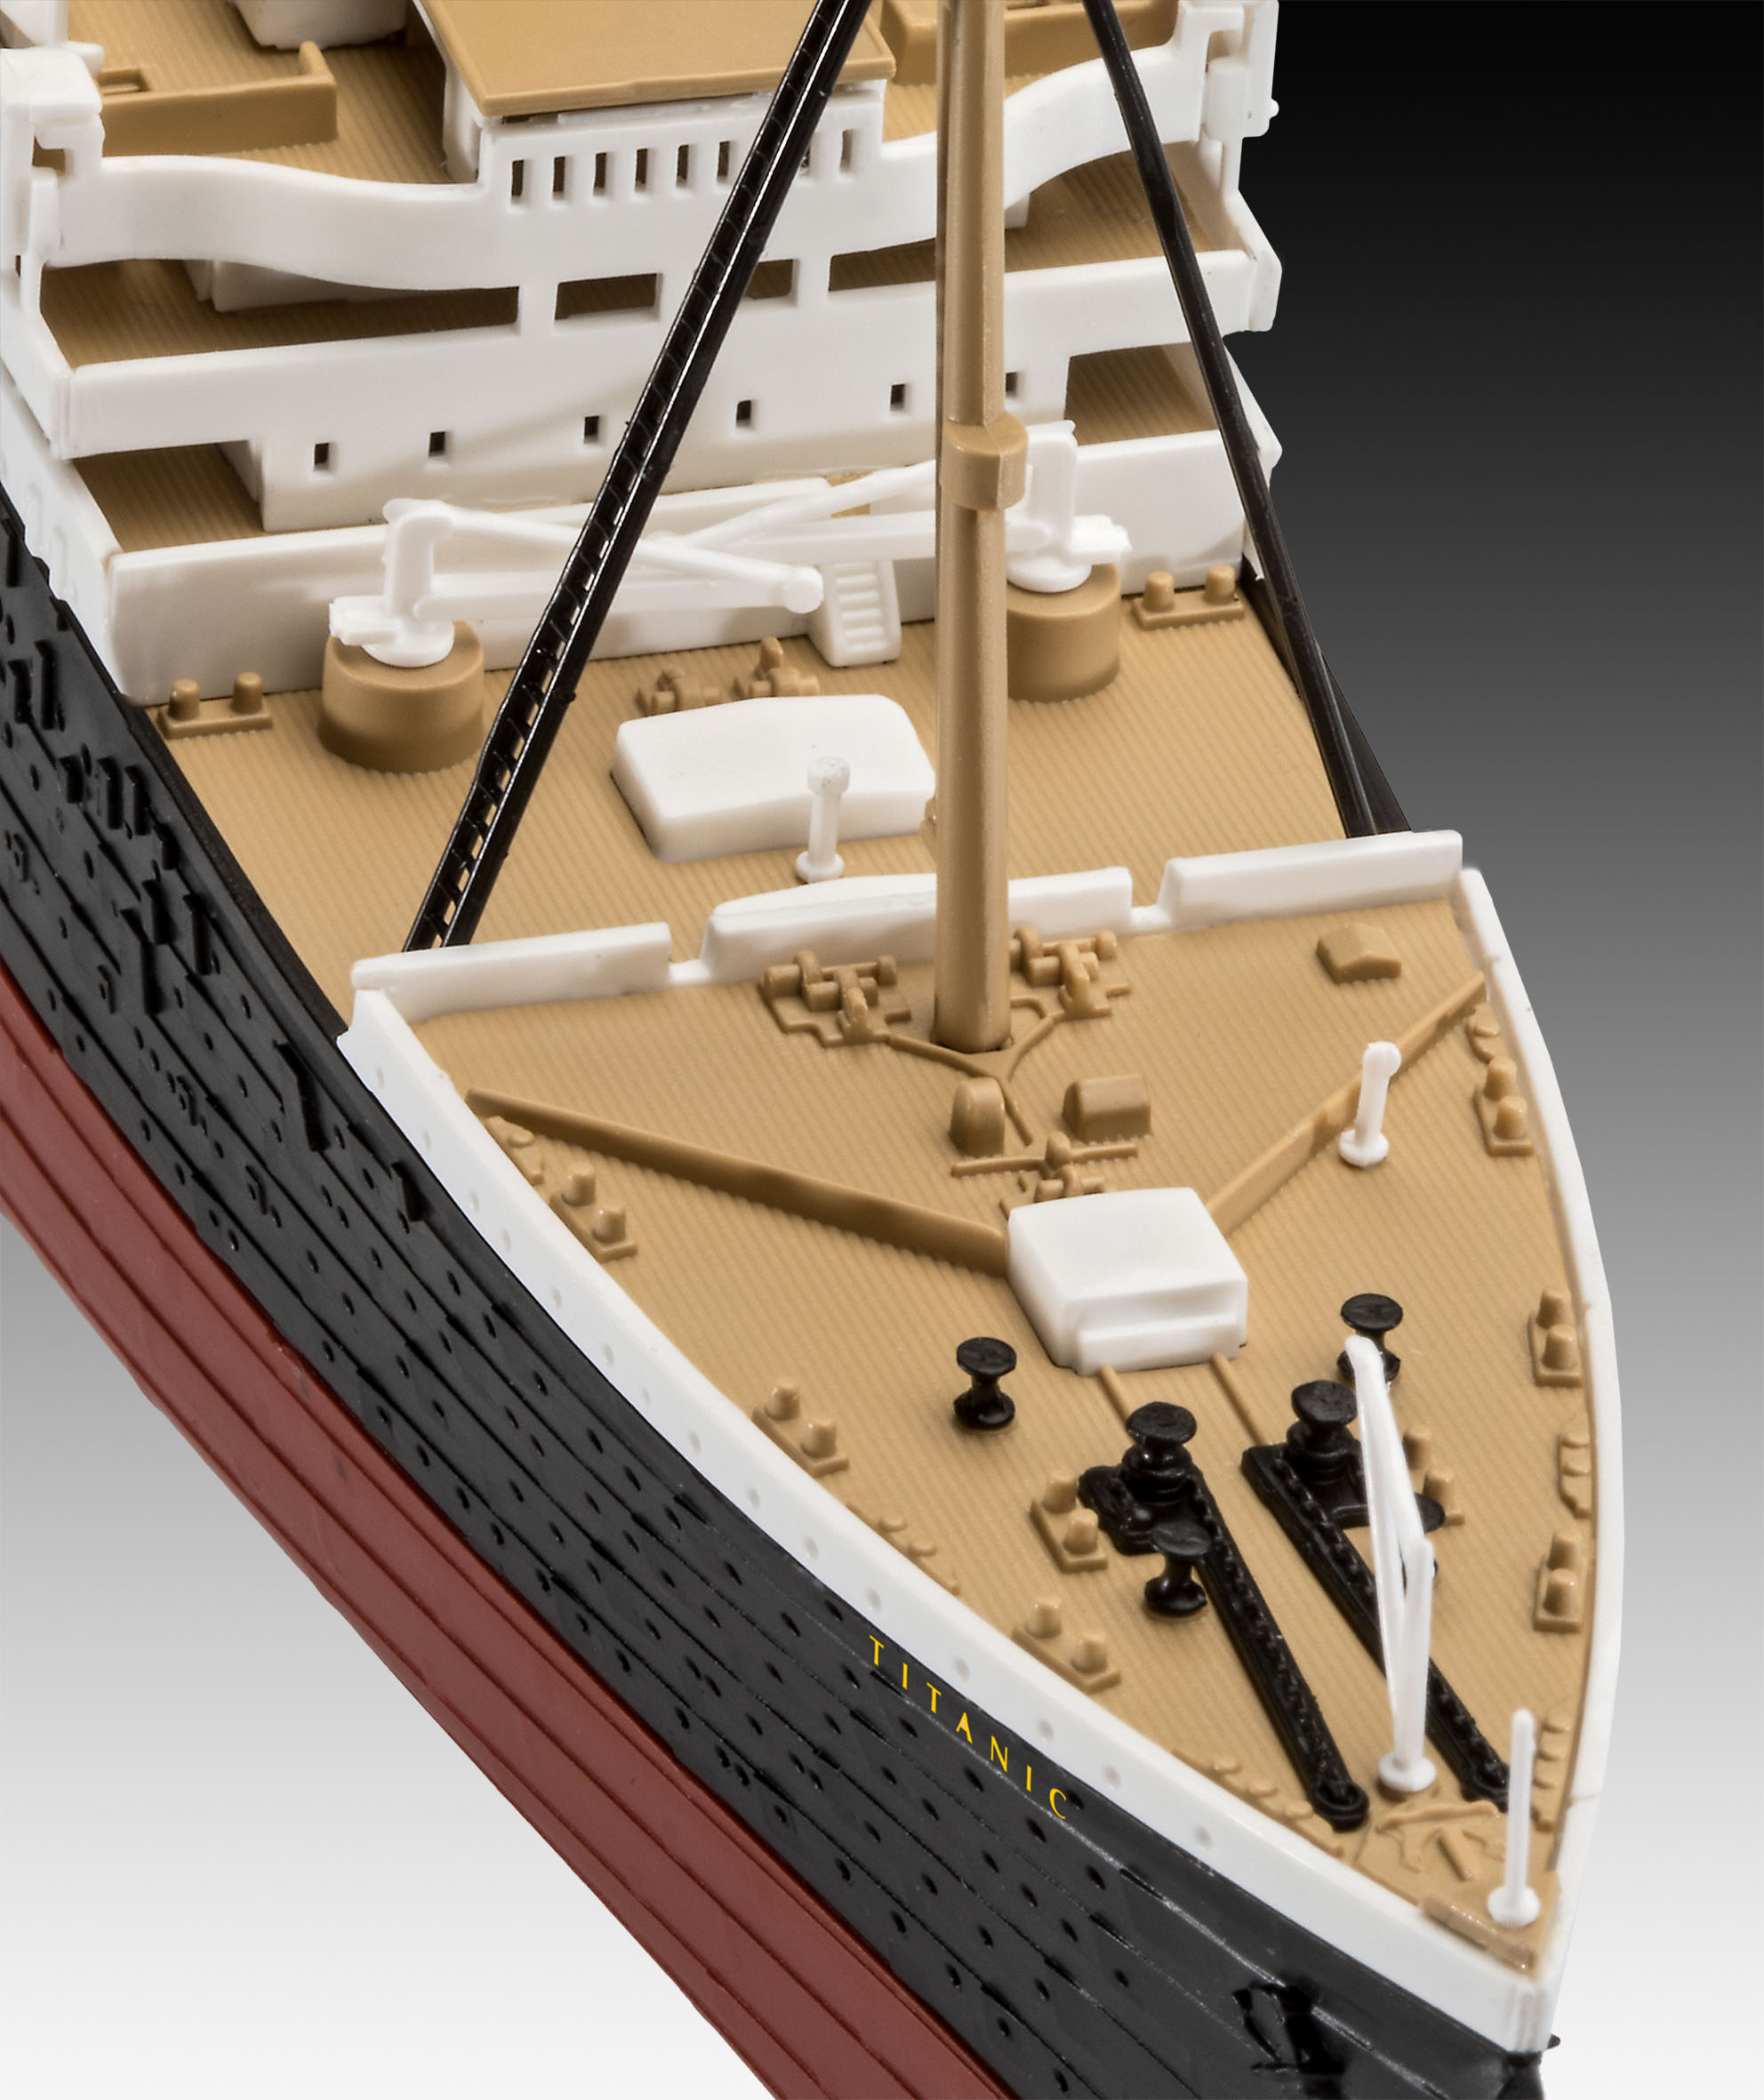 1/600 ギフトセット RMS タイタニック + 3Dパズル (氷山) タムタム